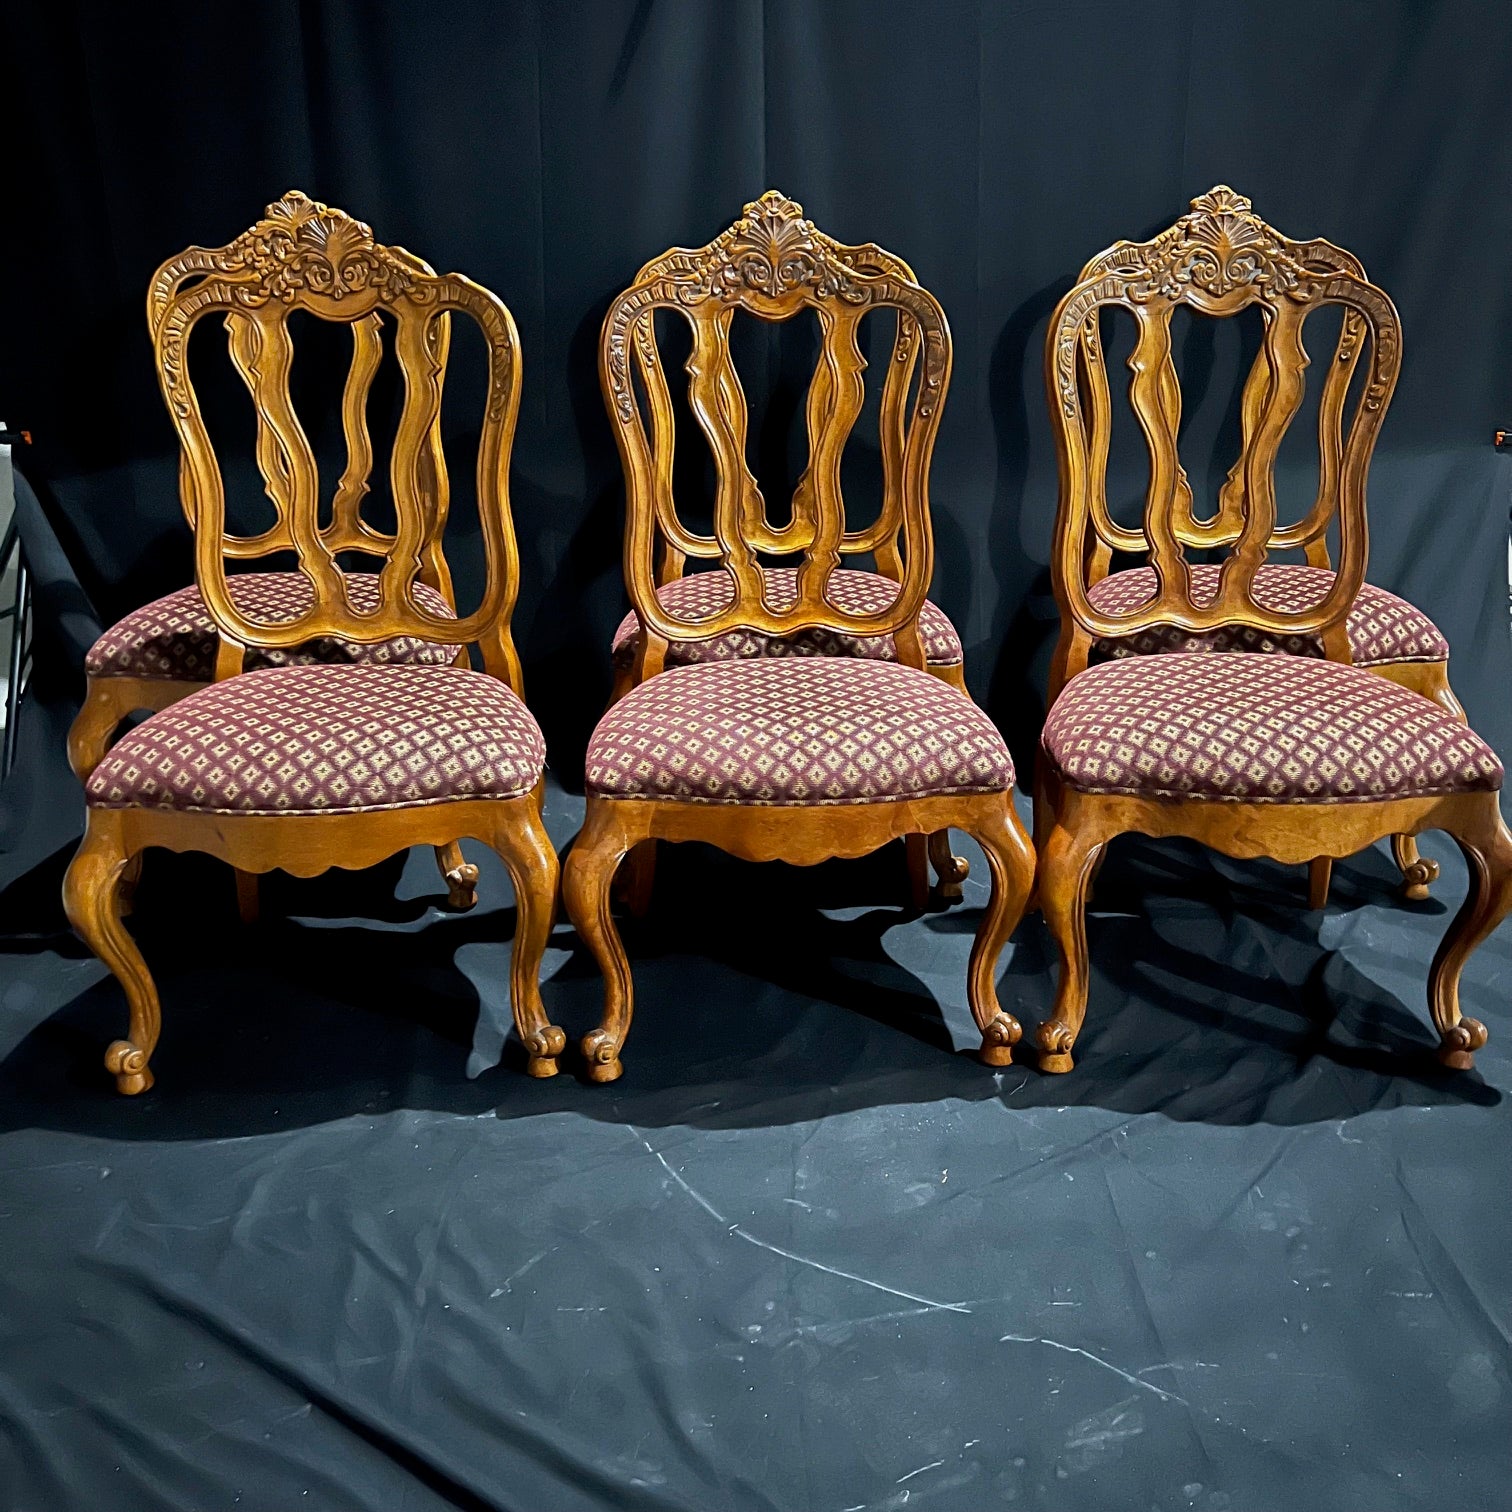 Ensemble de huit chaises de salle à manger de style Louis XV, avec quatre pieds cabriole et des pieds en escargot, de belles feuilles d'acanthe et des fleurs sculptées sur le dessus ou la crête du cadre de la chaise. Il s'agit de jolies chaises à